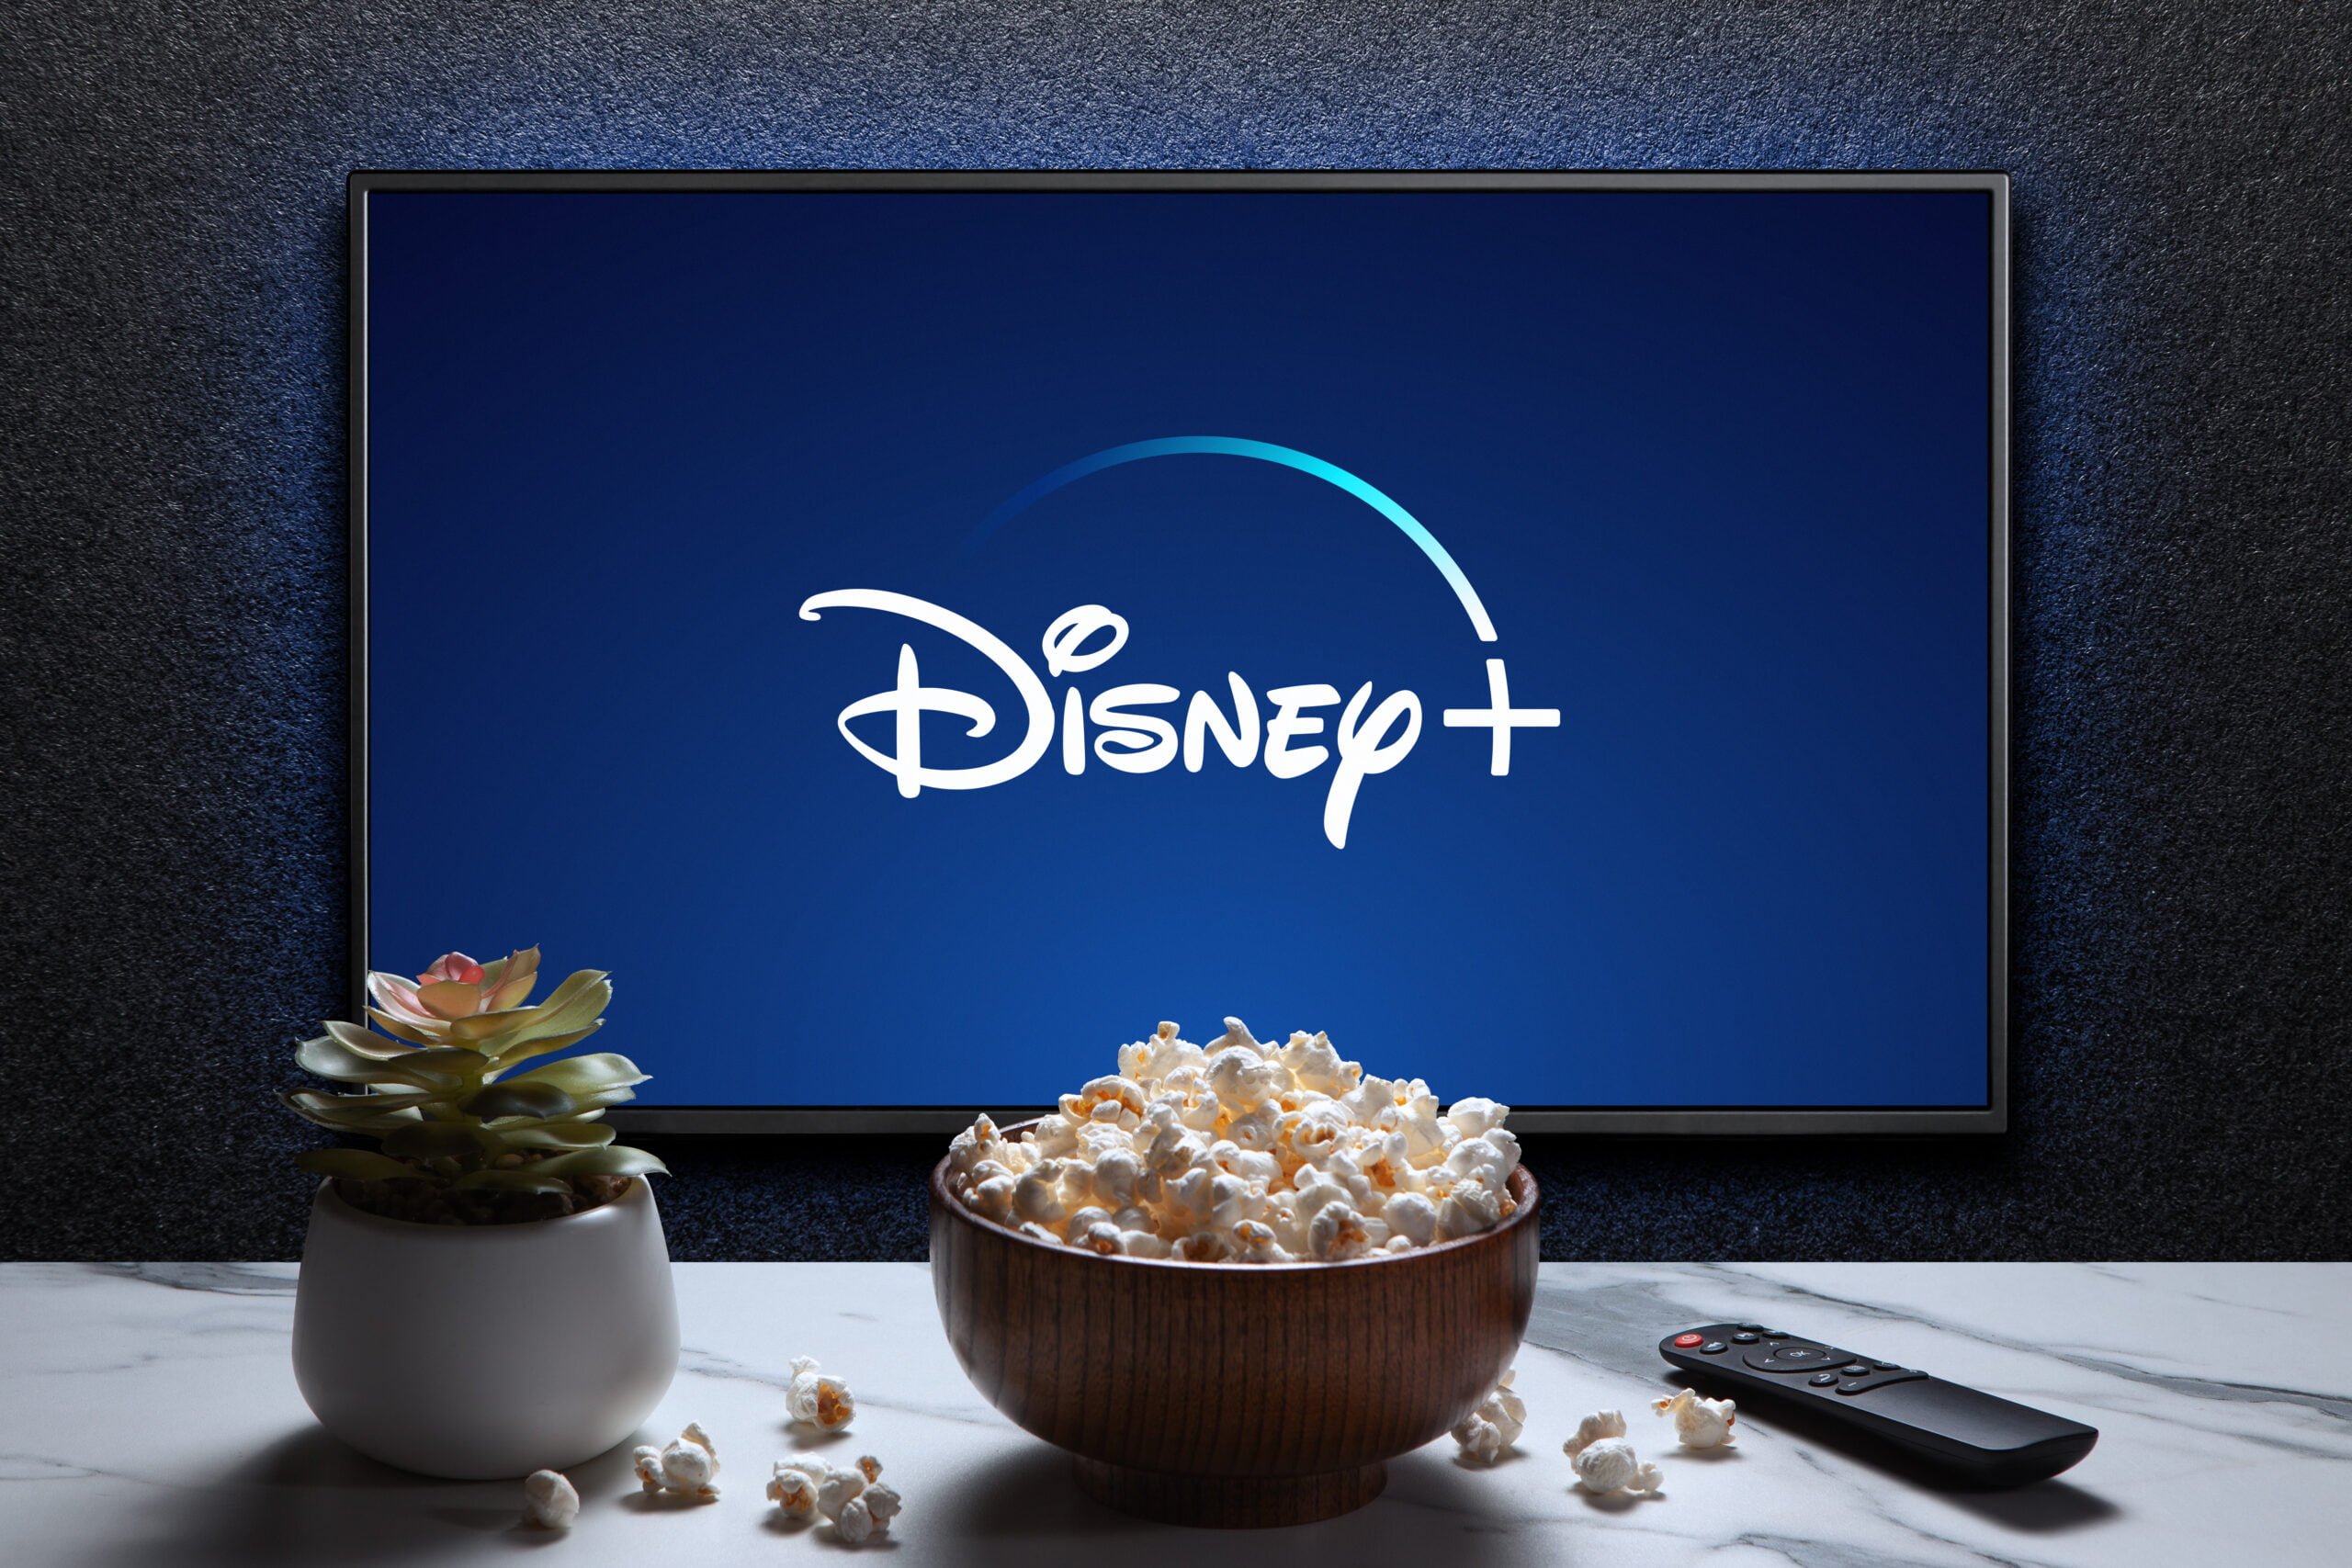 Telewizor wyświetlający logo Disney+, obok miseczka z popcornem, doniczka z sukulentem i pilot do telewizora na białym blacie.